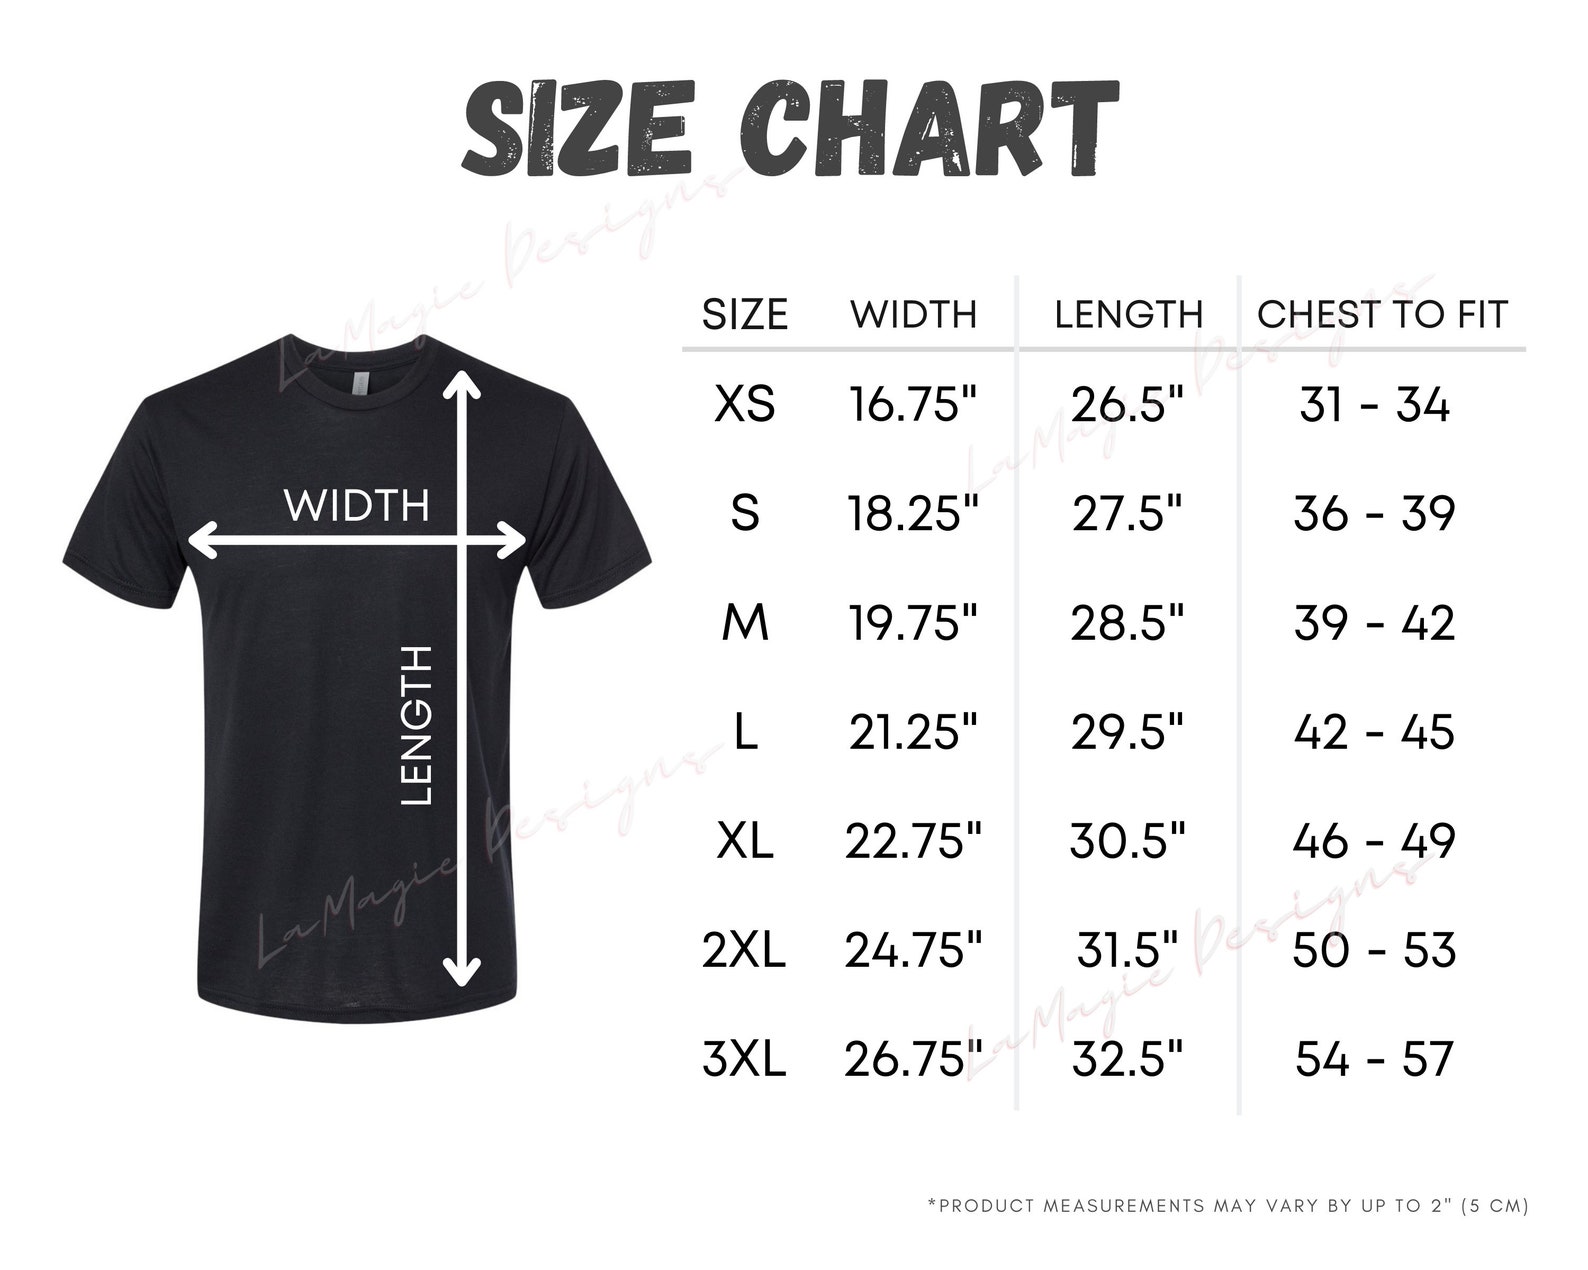 Next Level 6010 Size Chart N6010 Next Level Tshirt Size - Etsy